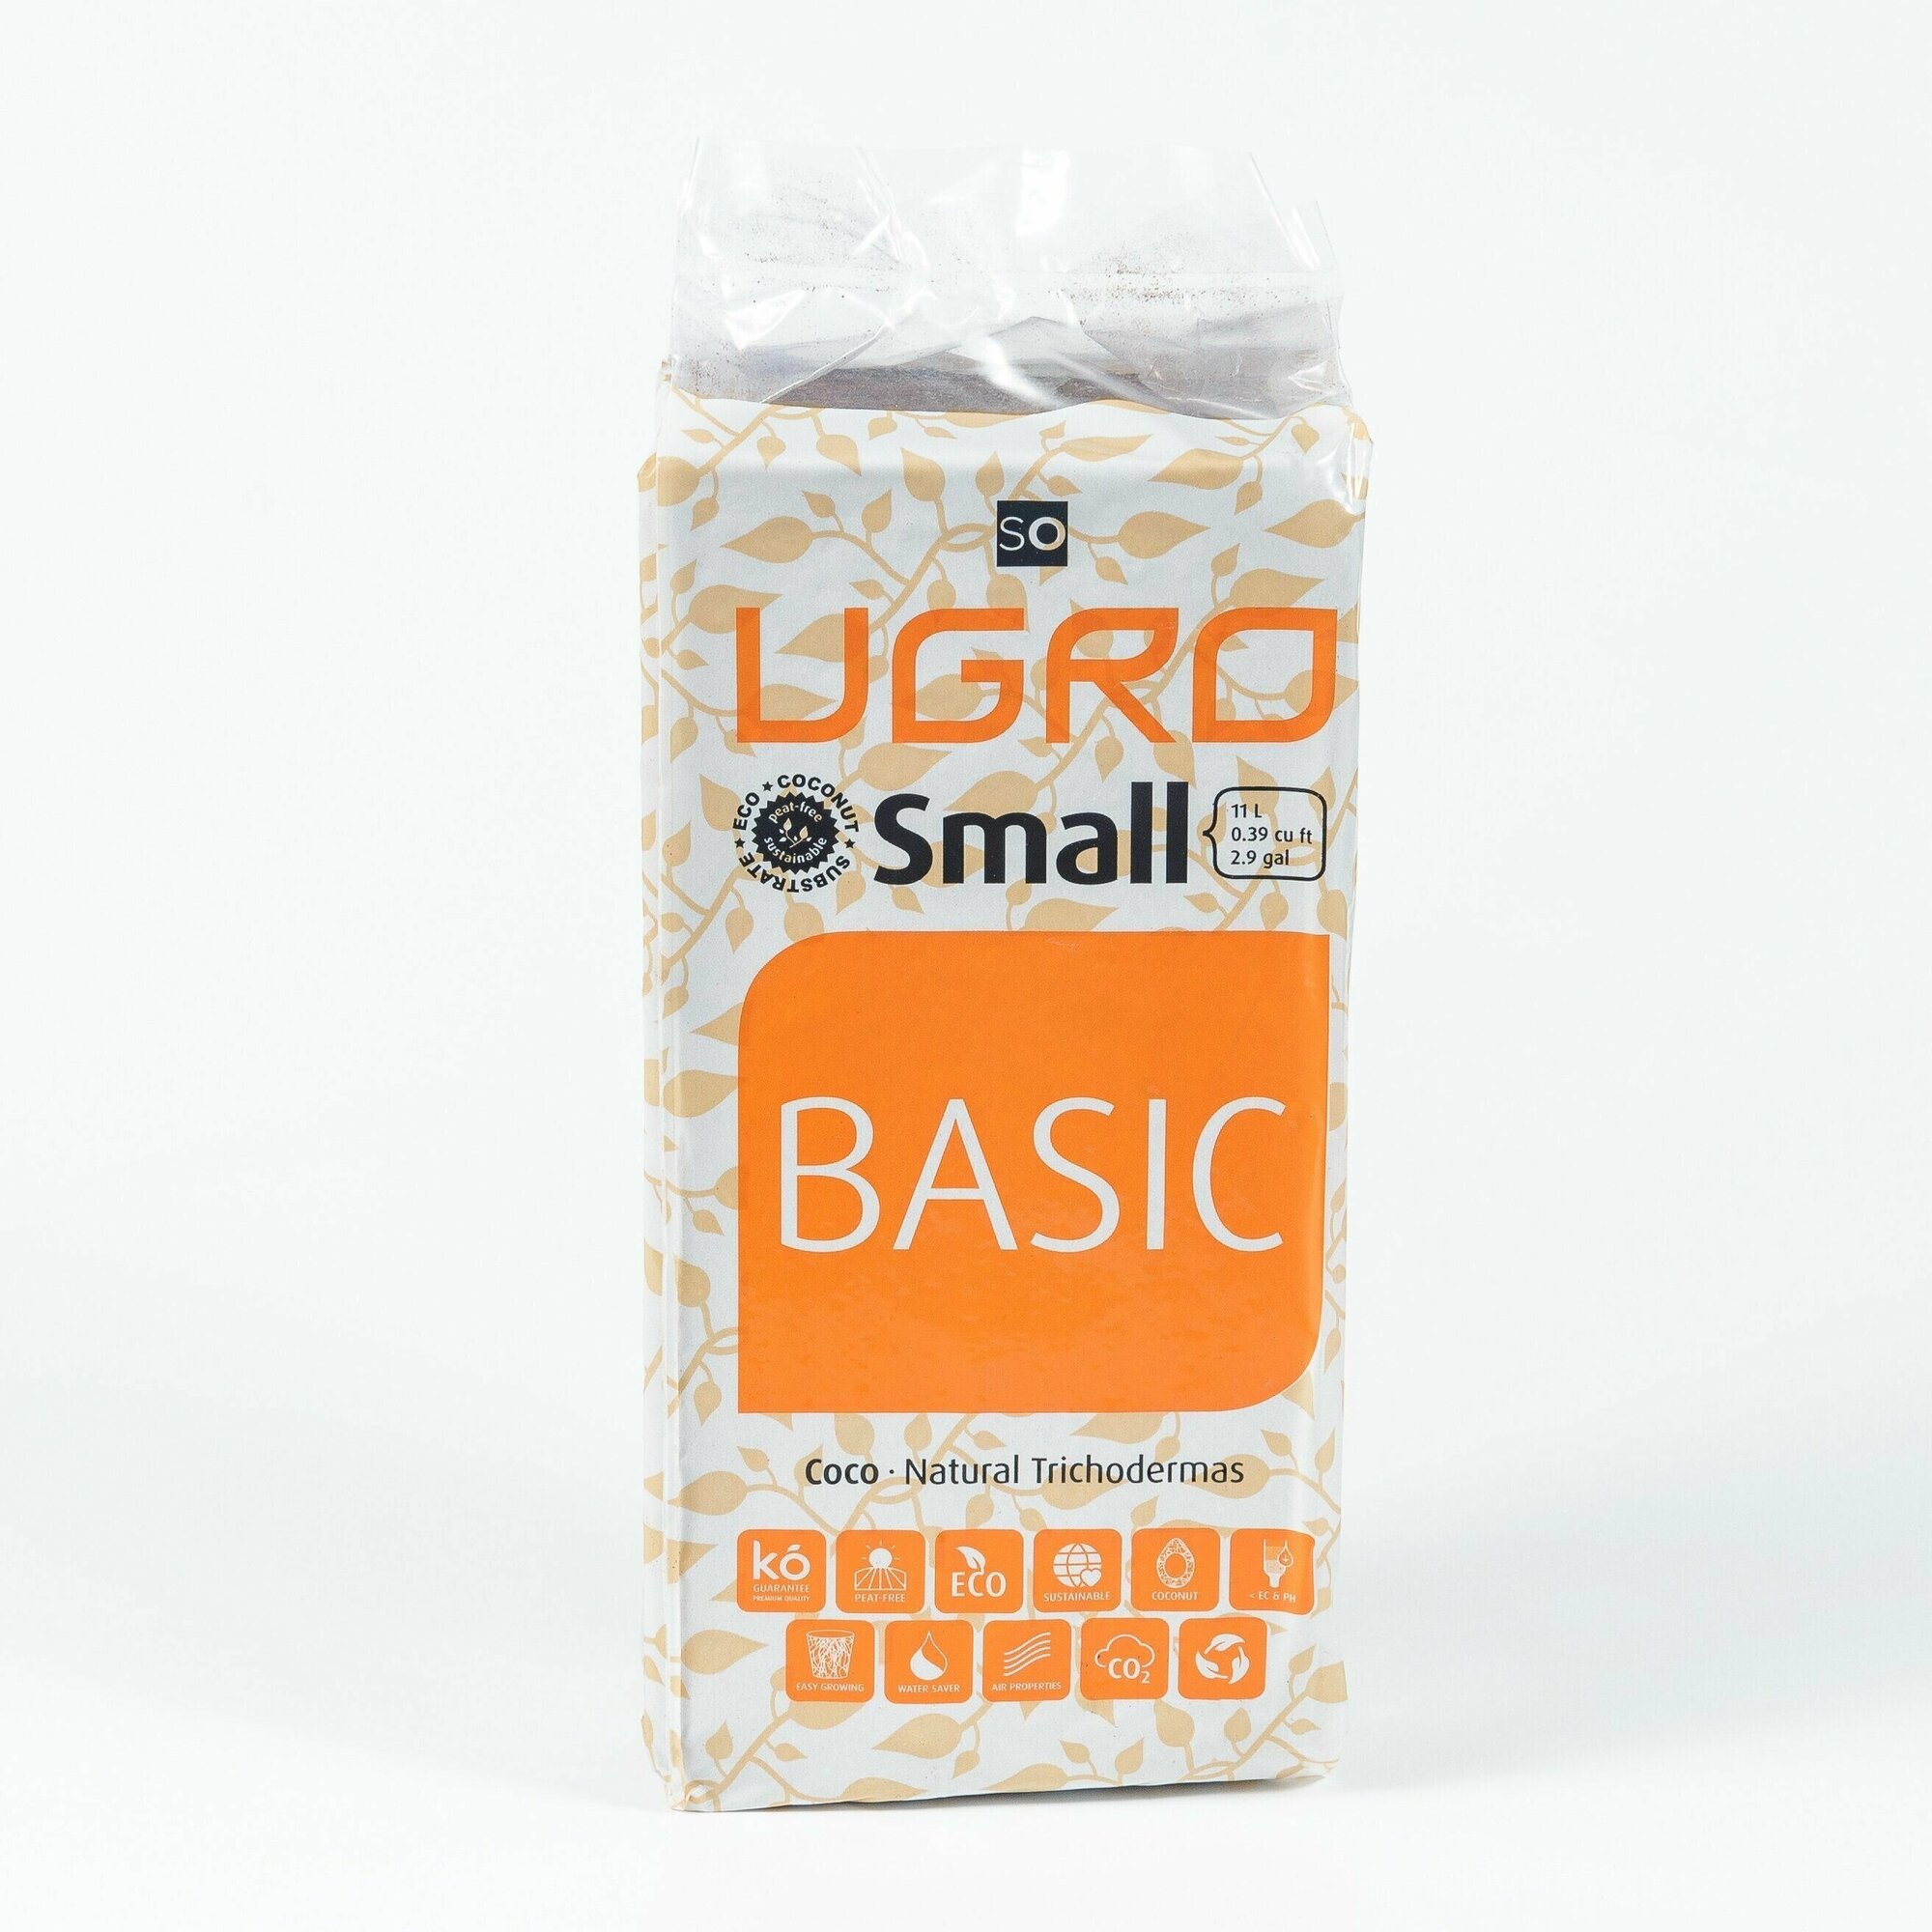 Кокосовый субстрат Ugro small Basic 11 литров